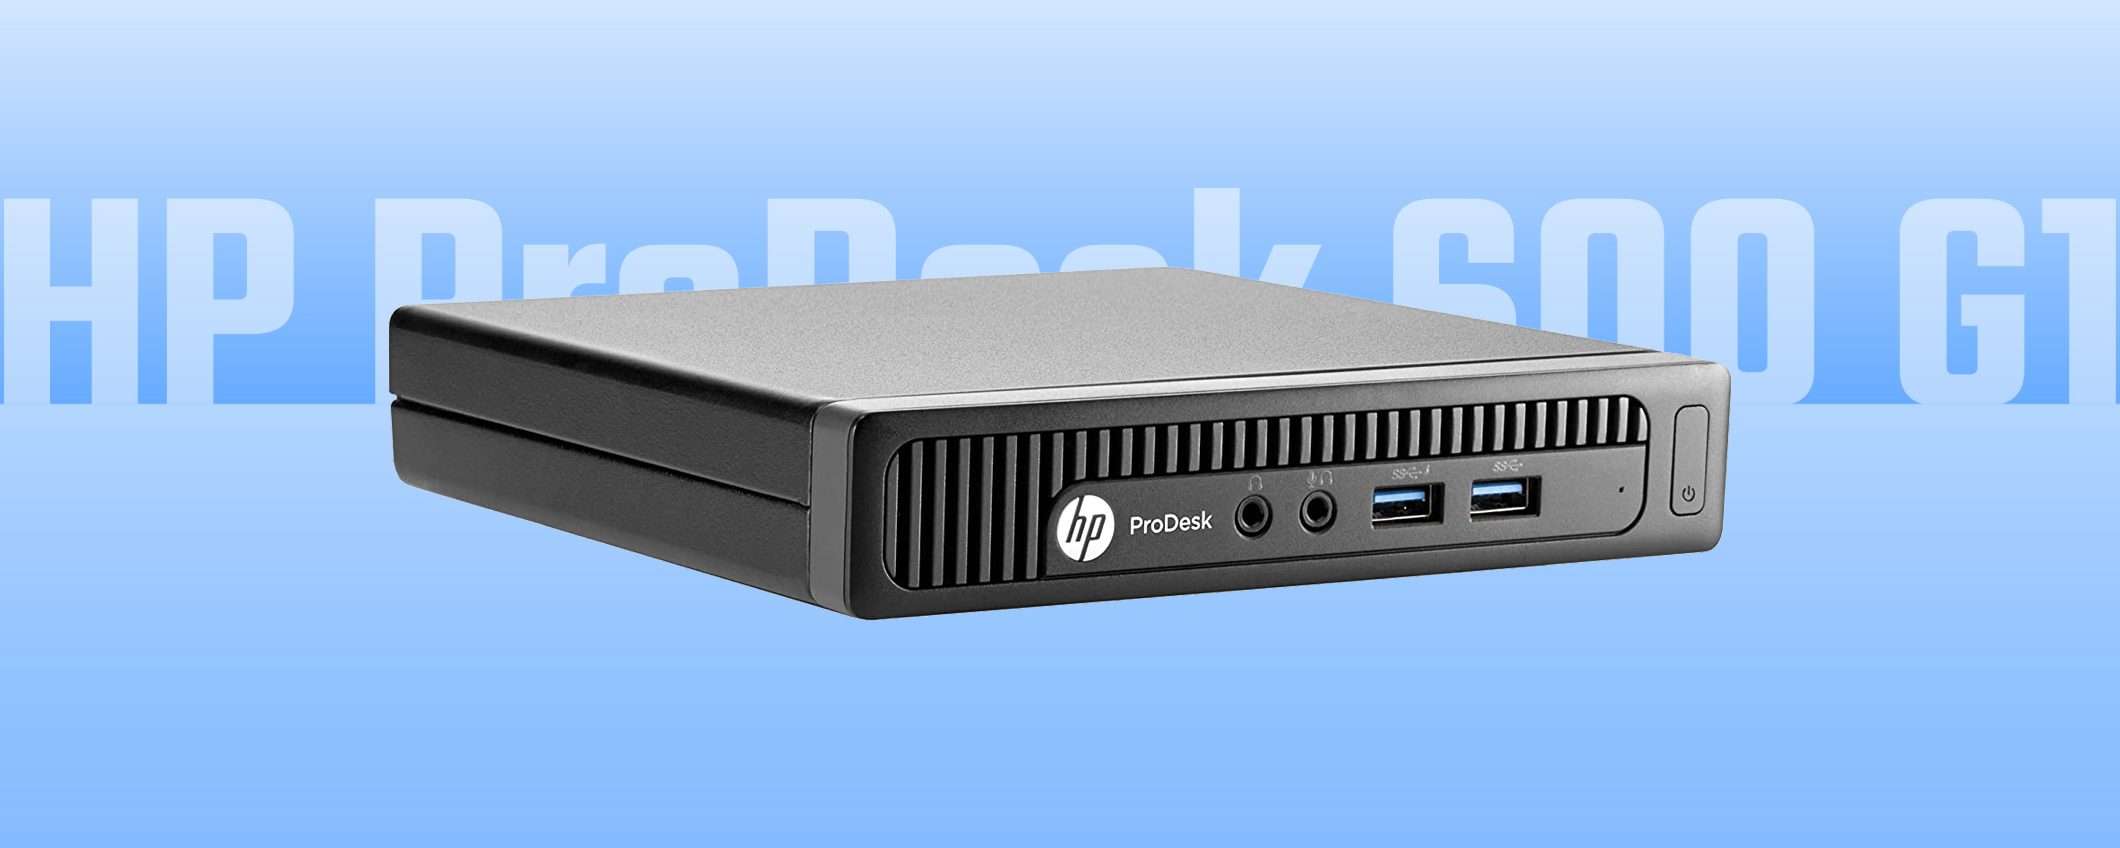 Mini PC: solo 99 euro per HP ProDesk 600 G1